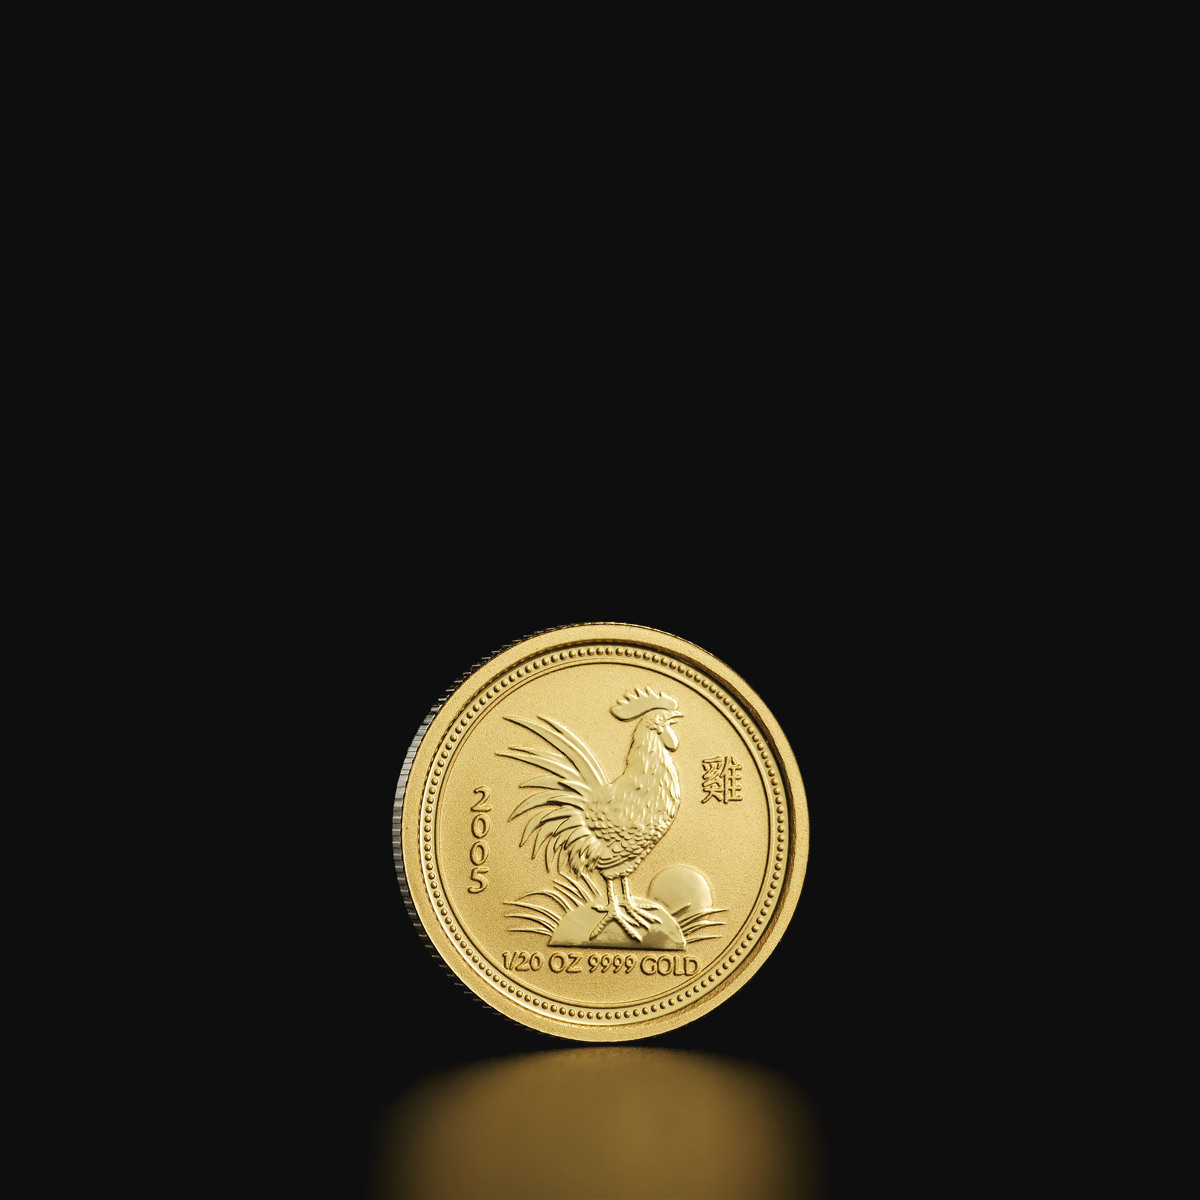 1/20 oz Australian Lunar kultakolikko 2005, kukko - Tavex - Valuutta,  Kulta, Hopea